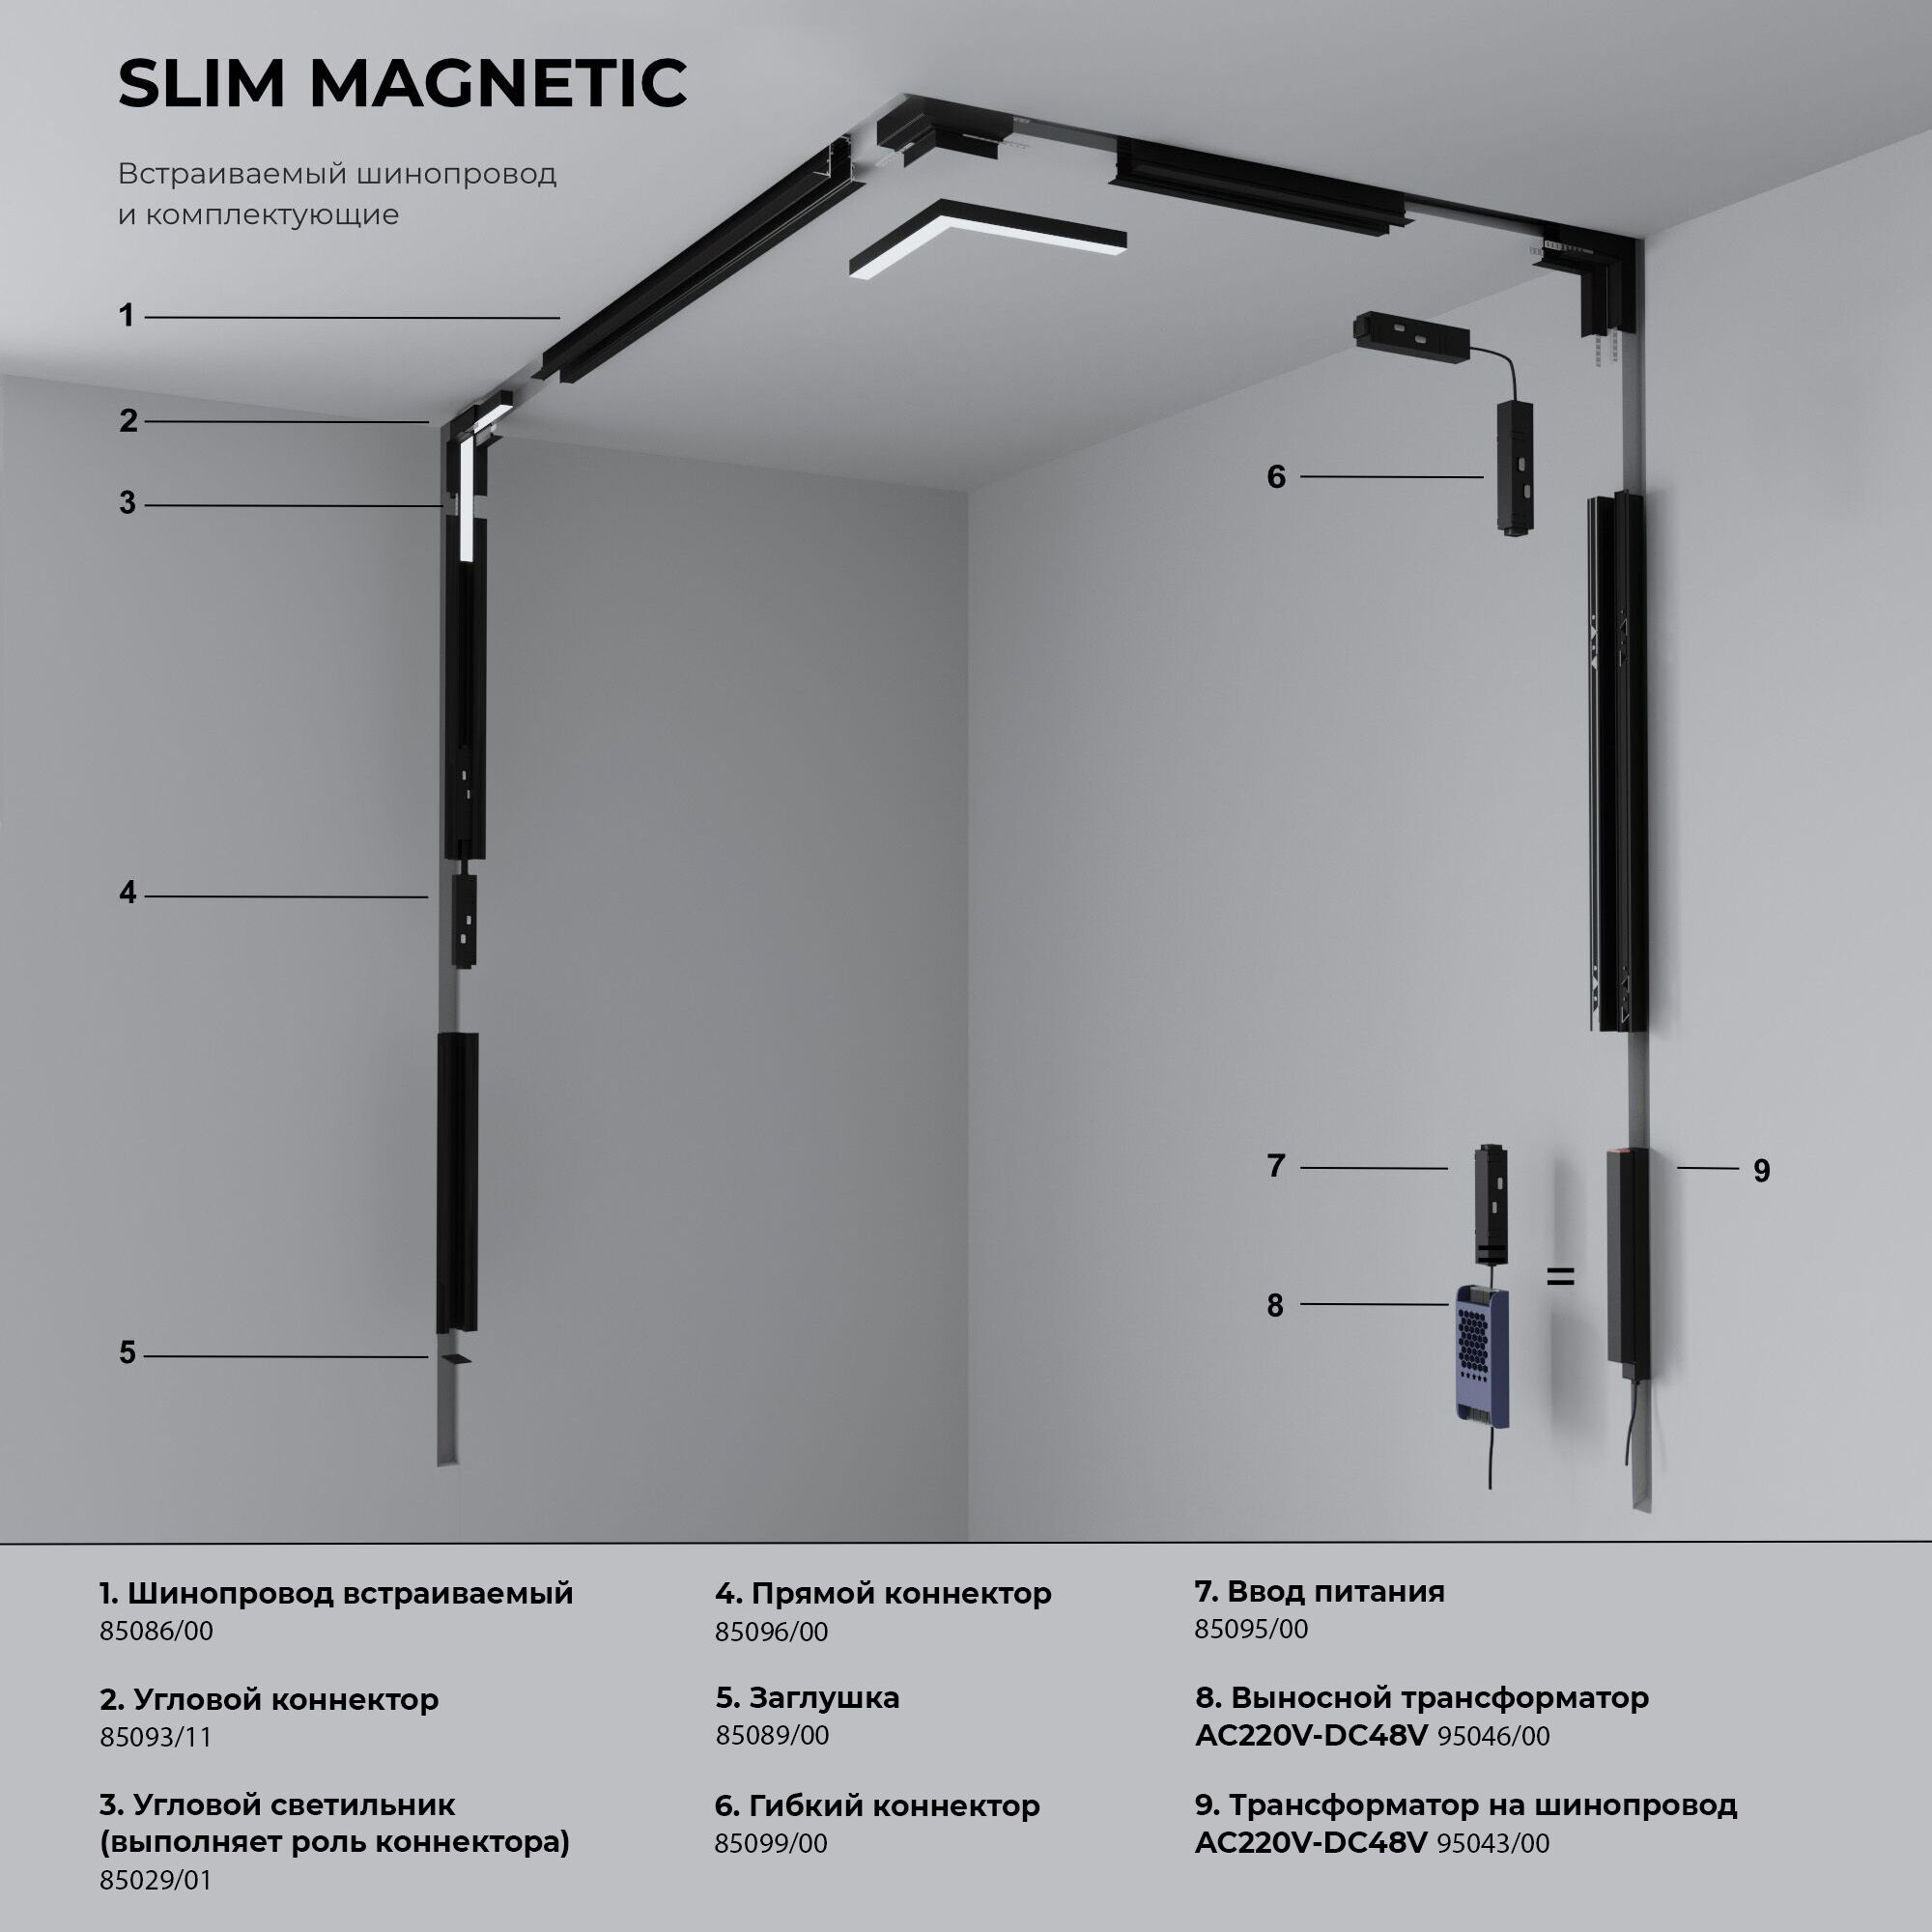 Slim Magnetic Блок питания 100W белый 95043/00